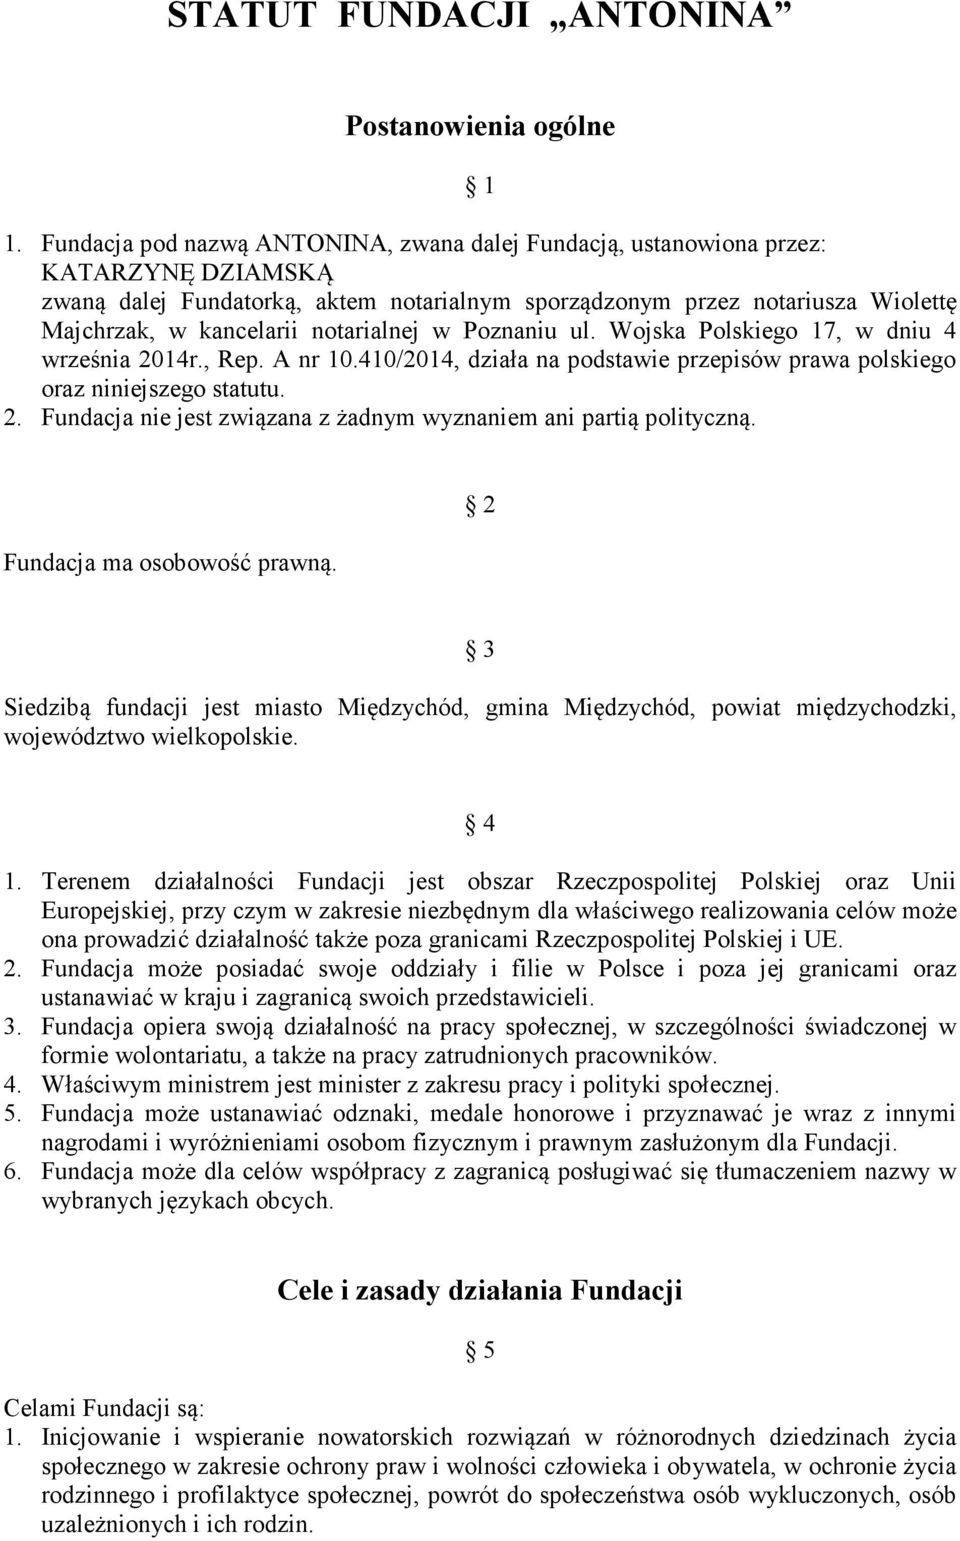 notarialnej w Poznaniu ul. Wojska Polskiego 17, w dniu 4 września 2014r., Rep. A nr 10.410/2014, działa na podstawie przepisów prawa polskiego oraz niniejszego statutu. 2. Fundacja nie jest związana z żadnym wyznaniem ani partią polityczną.